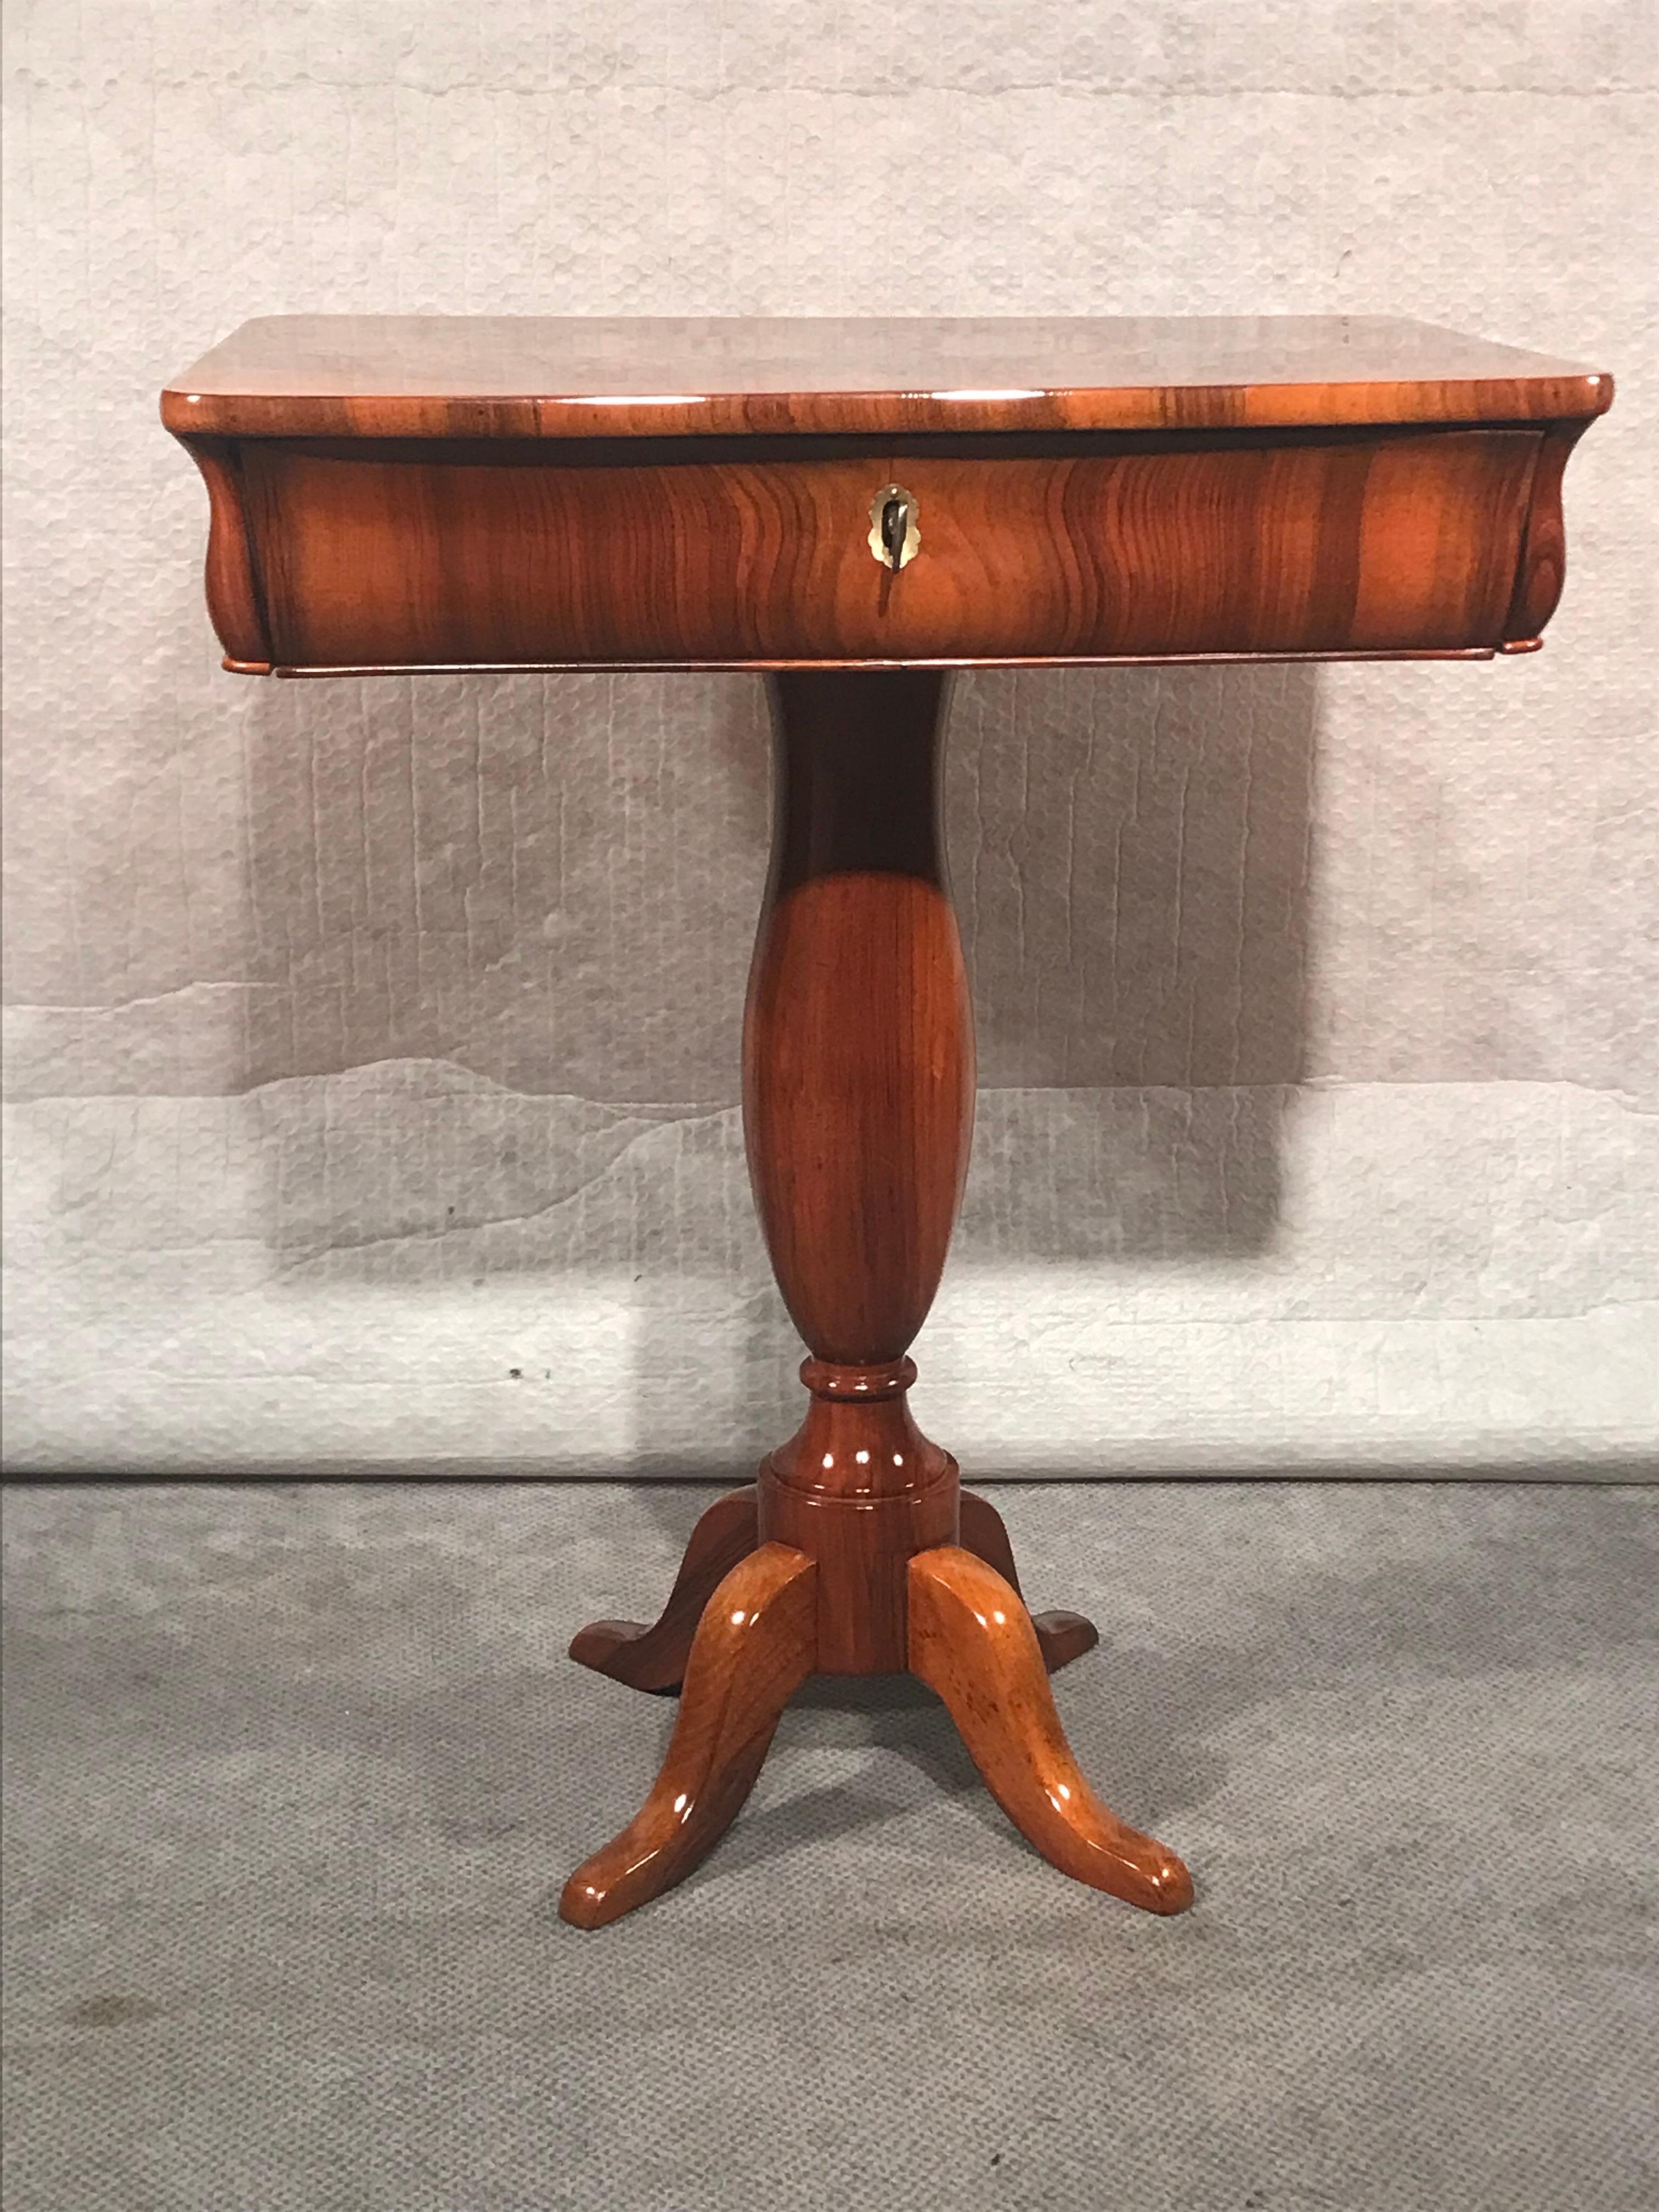 Dieser einzigartige Biedermeier-Nähtisch kommt aus Süddeutschland und stammt aus dem Jahr 1830. Der Tisch steht auf einem zentralen Fuß und hat eine Schublade. Die Platte zeichnet sich durch ein sehr schönes Walnussfurnier aus. Es kommt in sehr